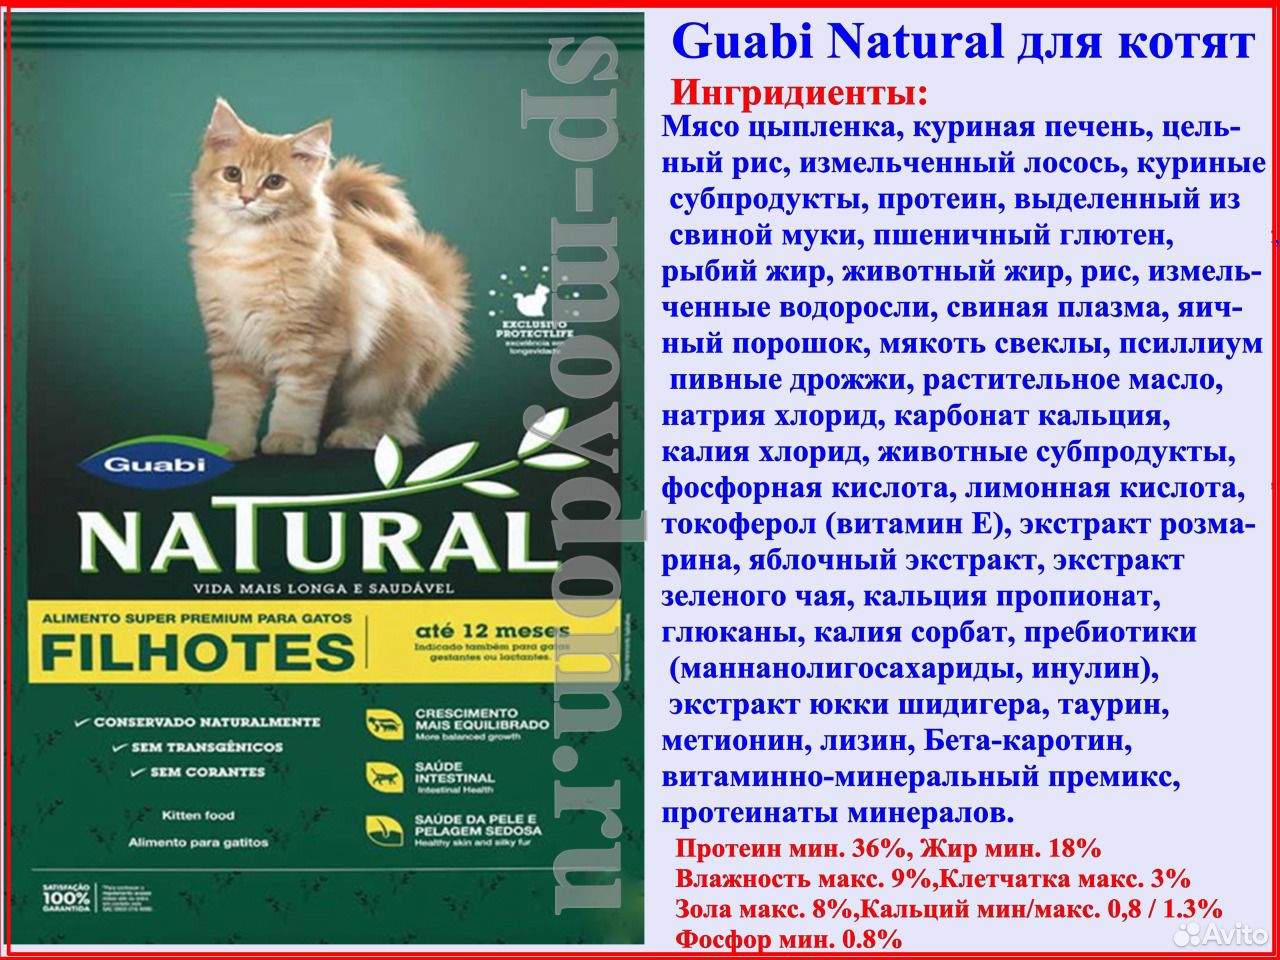 Гуаби корм для кошек. Guabi natural для котят. Guabi natural для кошек состав. Гуаби натурал для стерилизованных кошек. Guabi natural для котят состав.